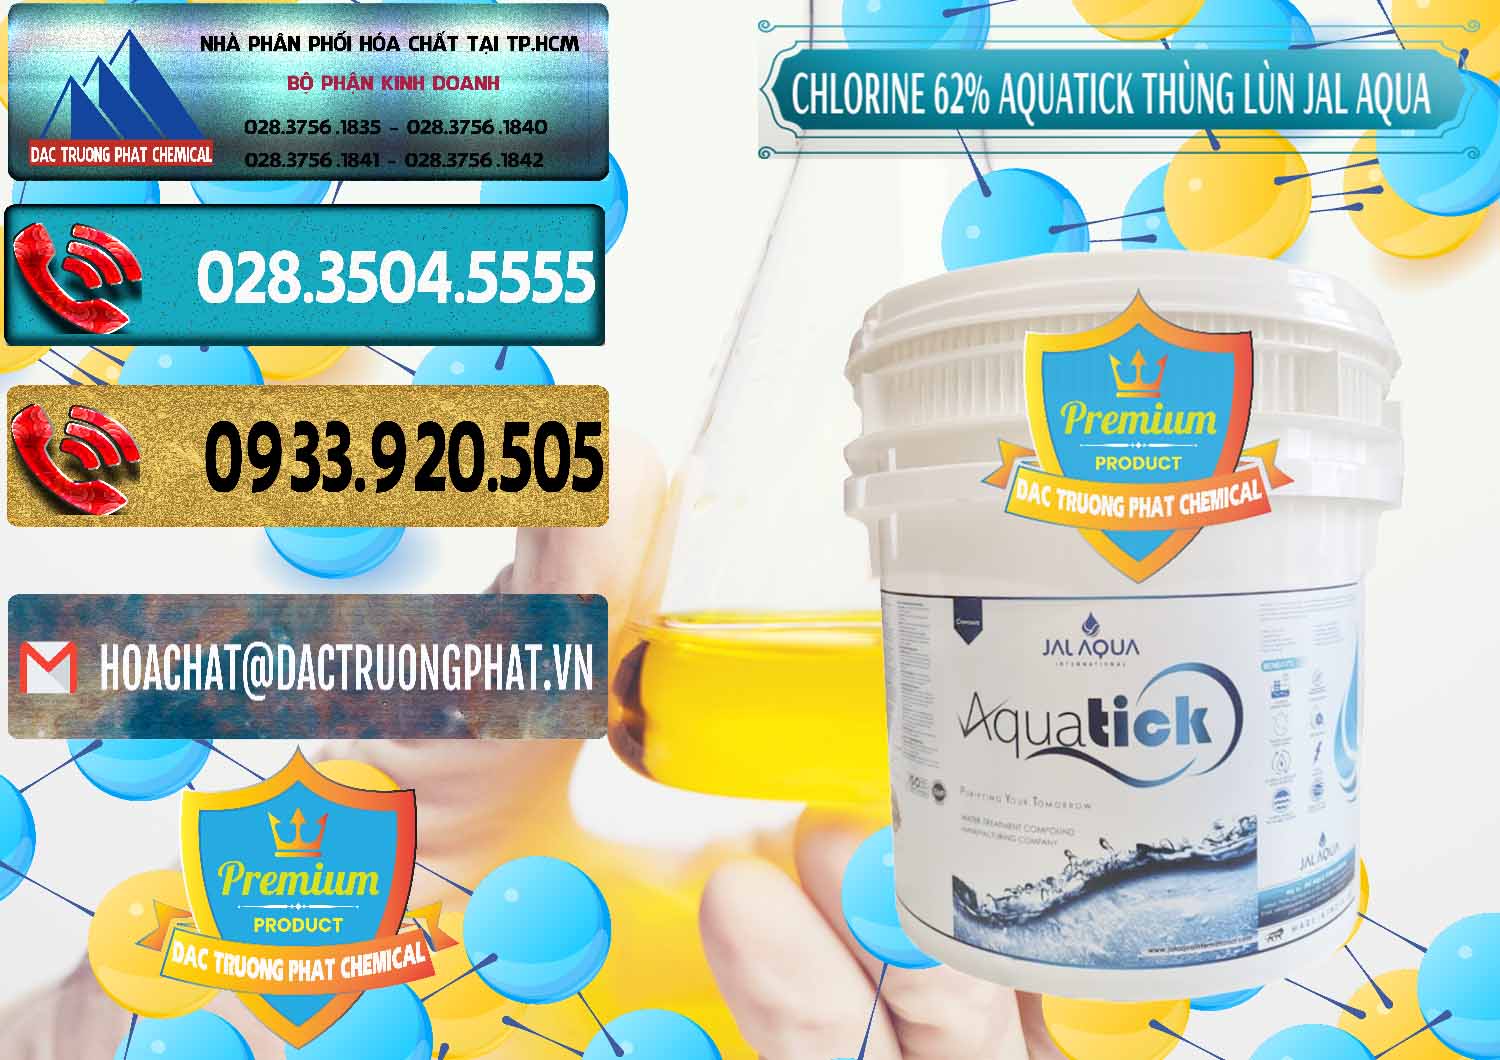 Bán _ phân phối Chlorine – Clorin 62% Aquatick Thùng Lùn Jal Aqua Ấn Độ India - 0238 - Đơn vị cung cấp & kinh doanh hóa chất tại TP.HCM - hoachatdetnhuom.com